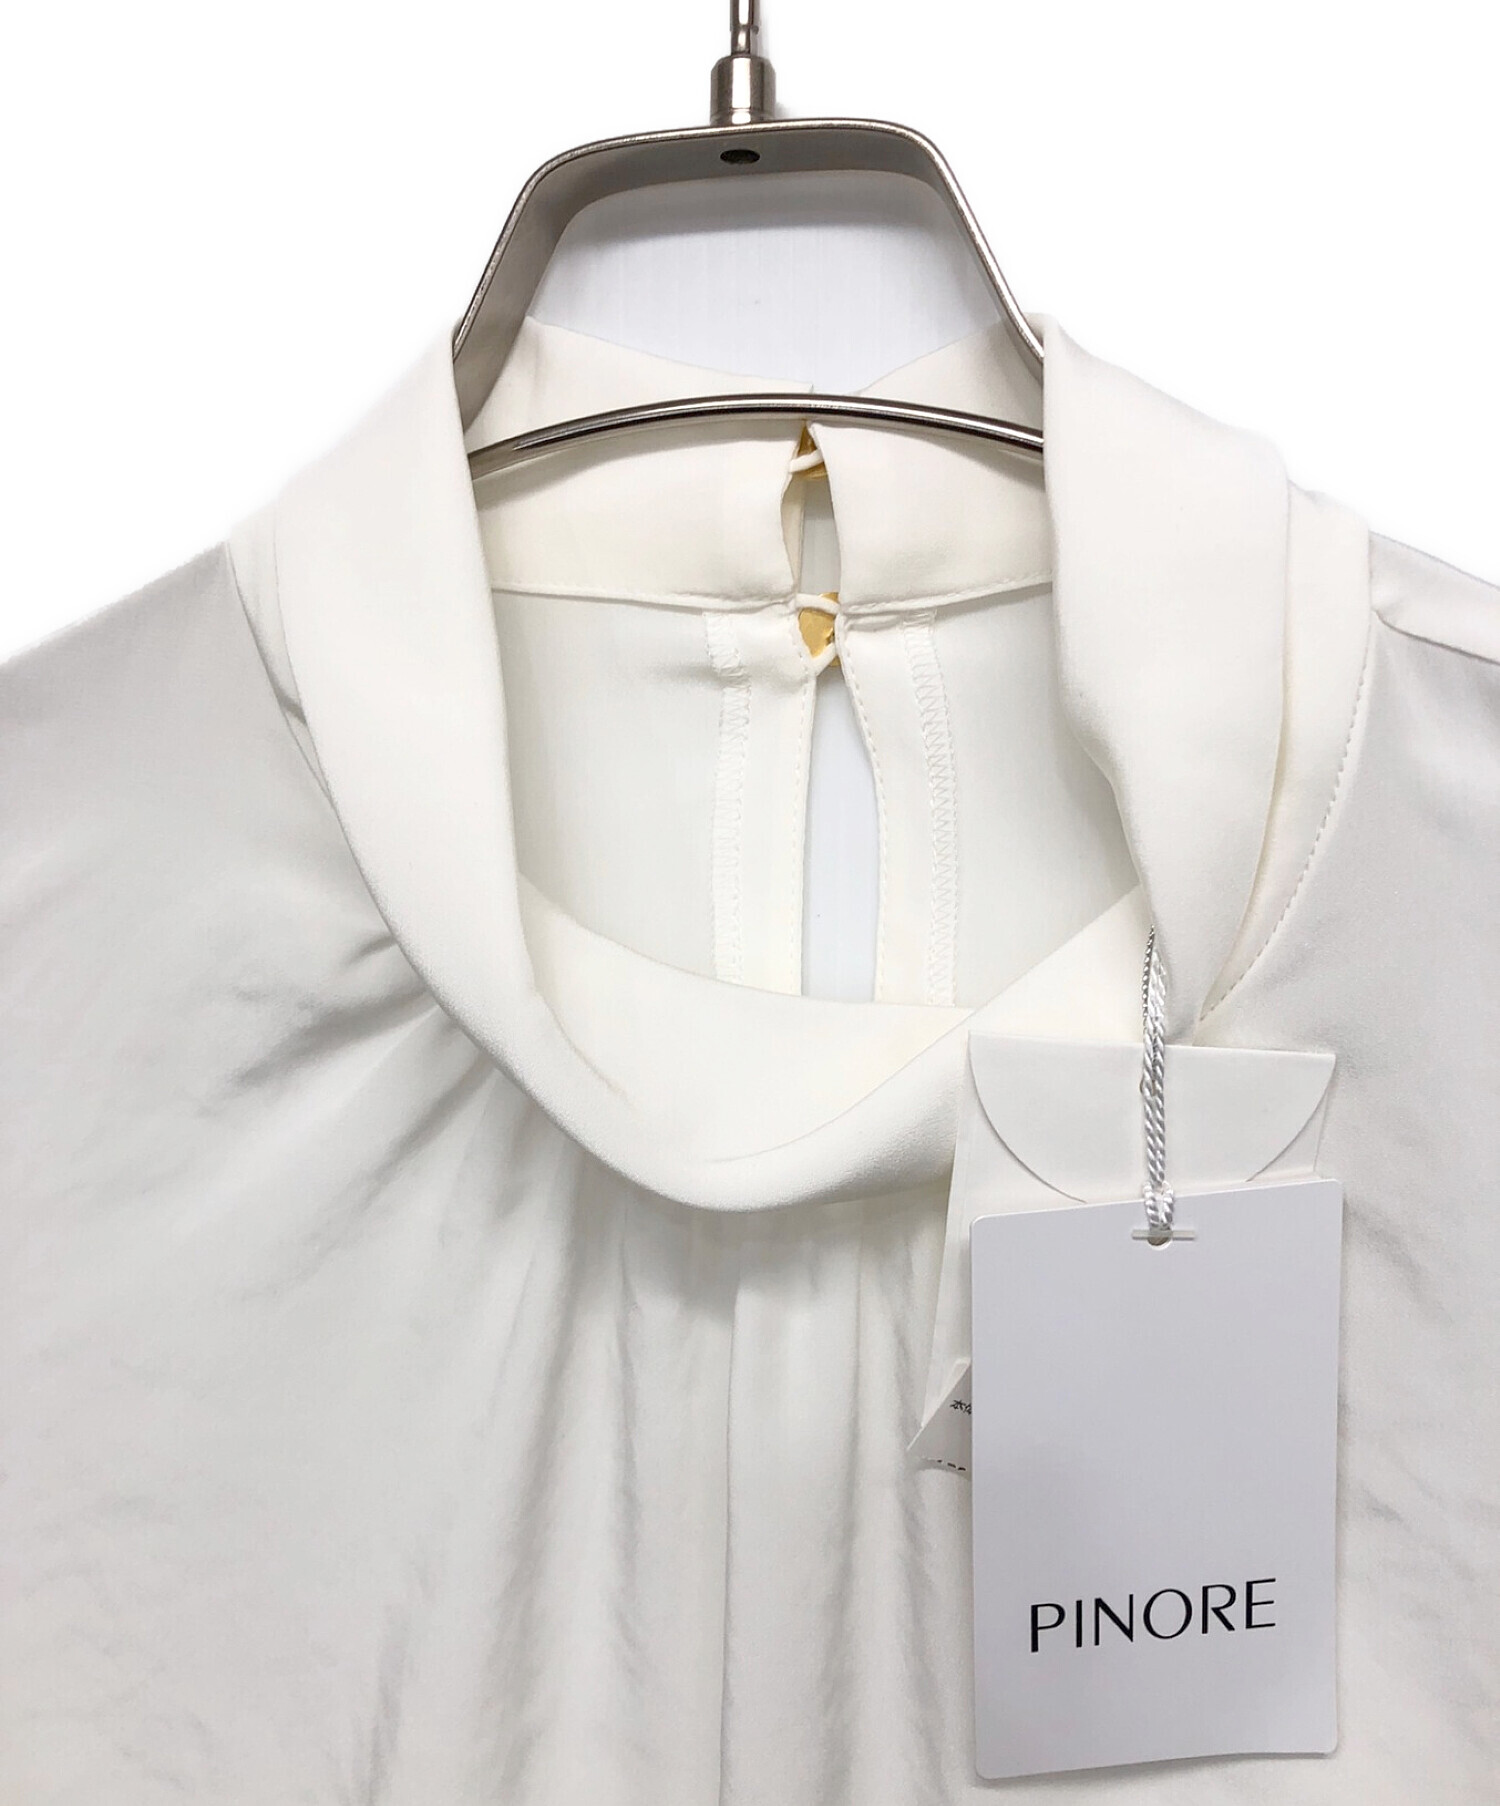 PINORE (ピノーレ) 長袖ブラウス ホワイト サイズ:38 未使用品